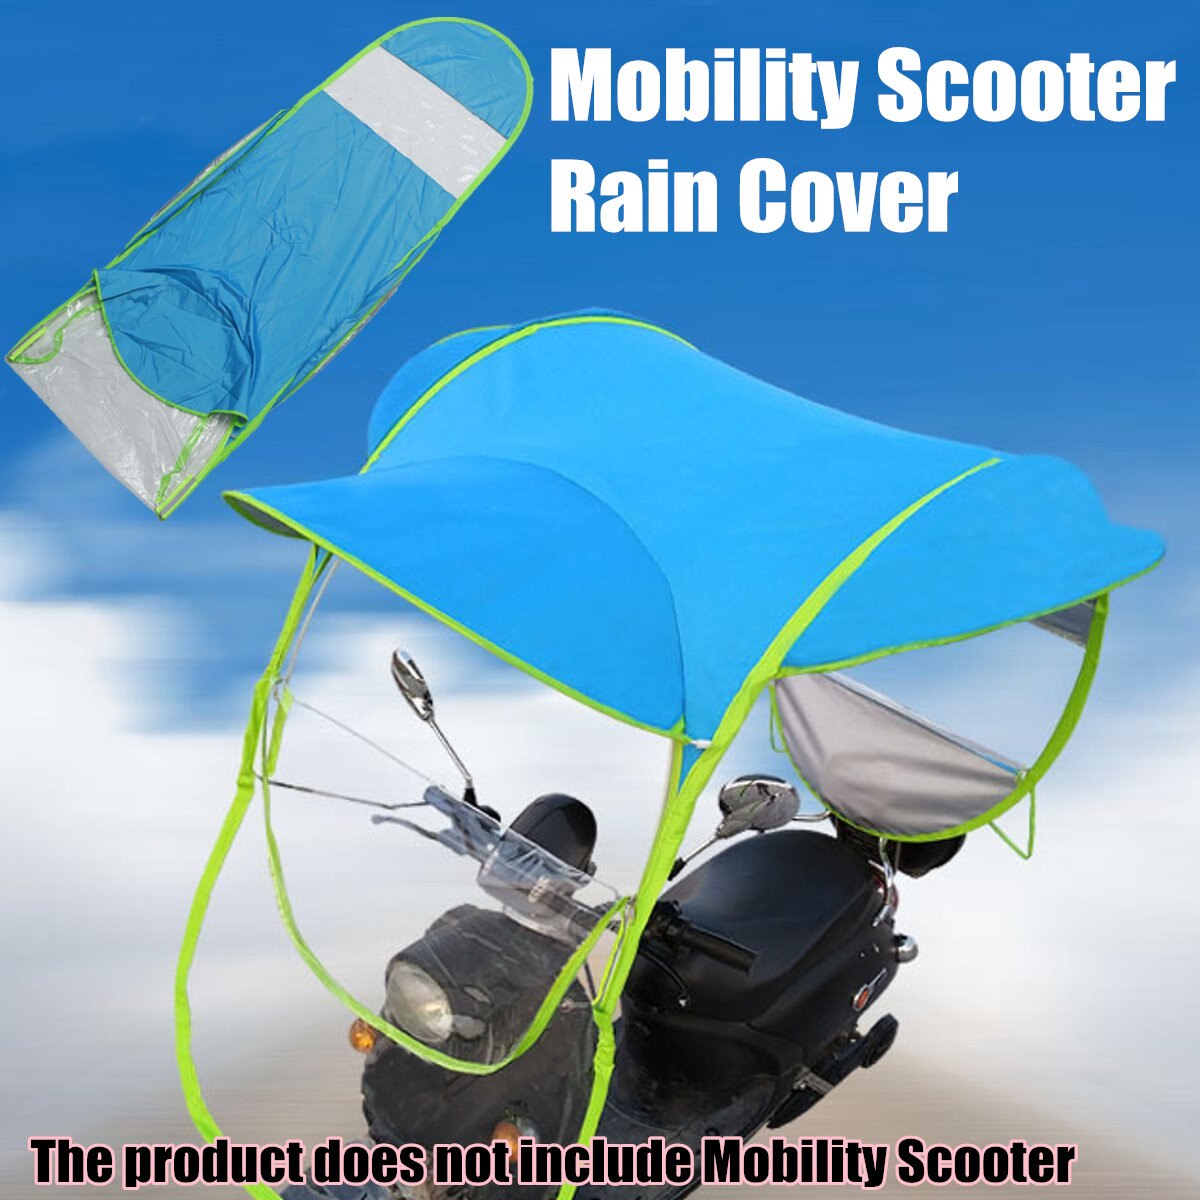 Mofaner mobilitet scooter cover elektromobil sol regn vind dæk elbil forhindrer paraply regnfrakke 2.8*0.8*0.75m